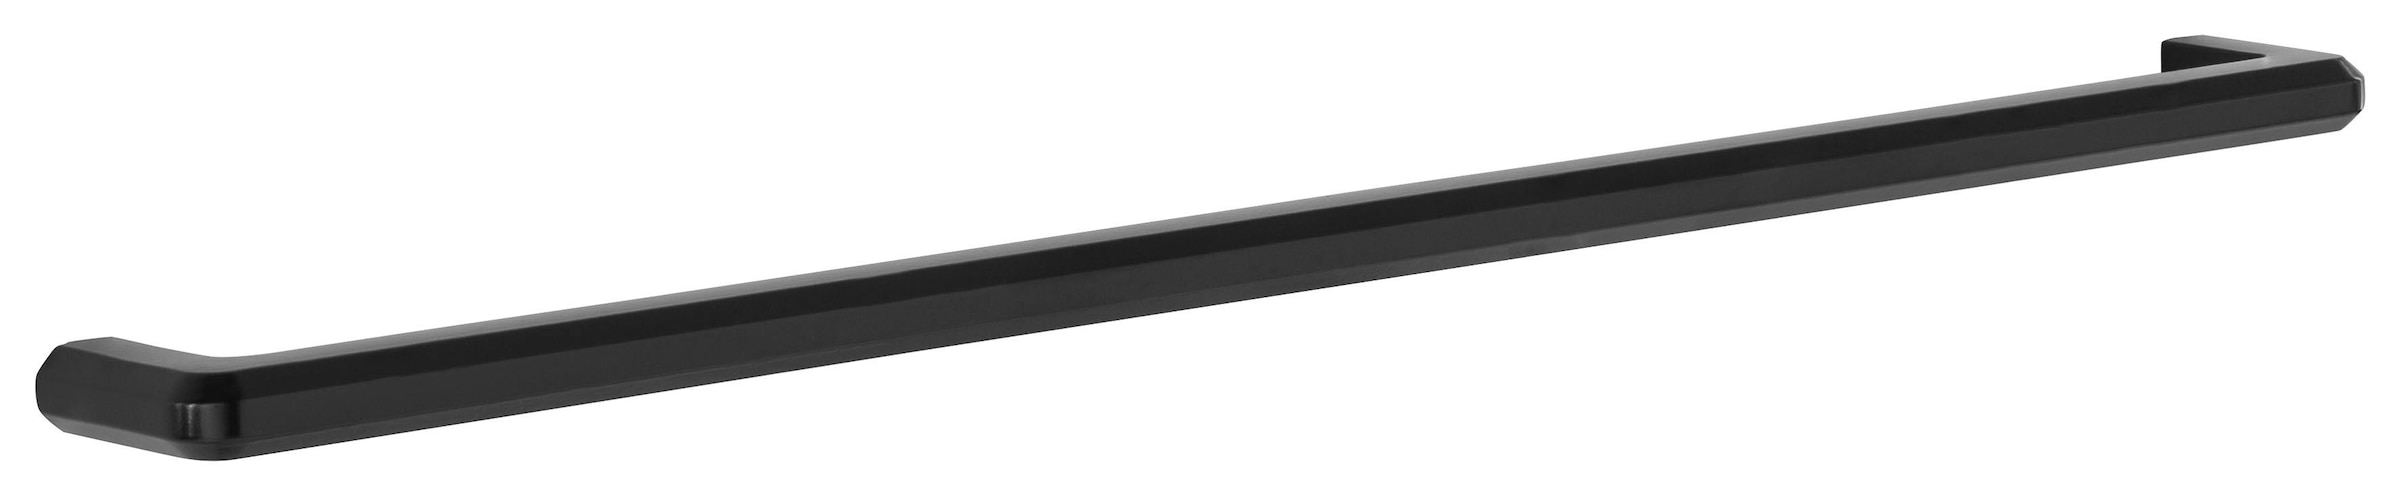 HELD MÖBEL Klapphängeschrank »Tulsa«, 100 cm breit, mit 1 Klappe, schwarzer Metallgriff, MDF Front